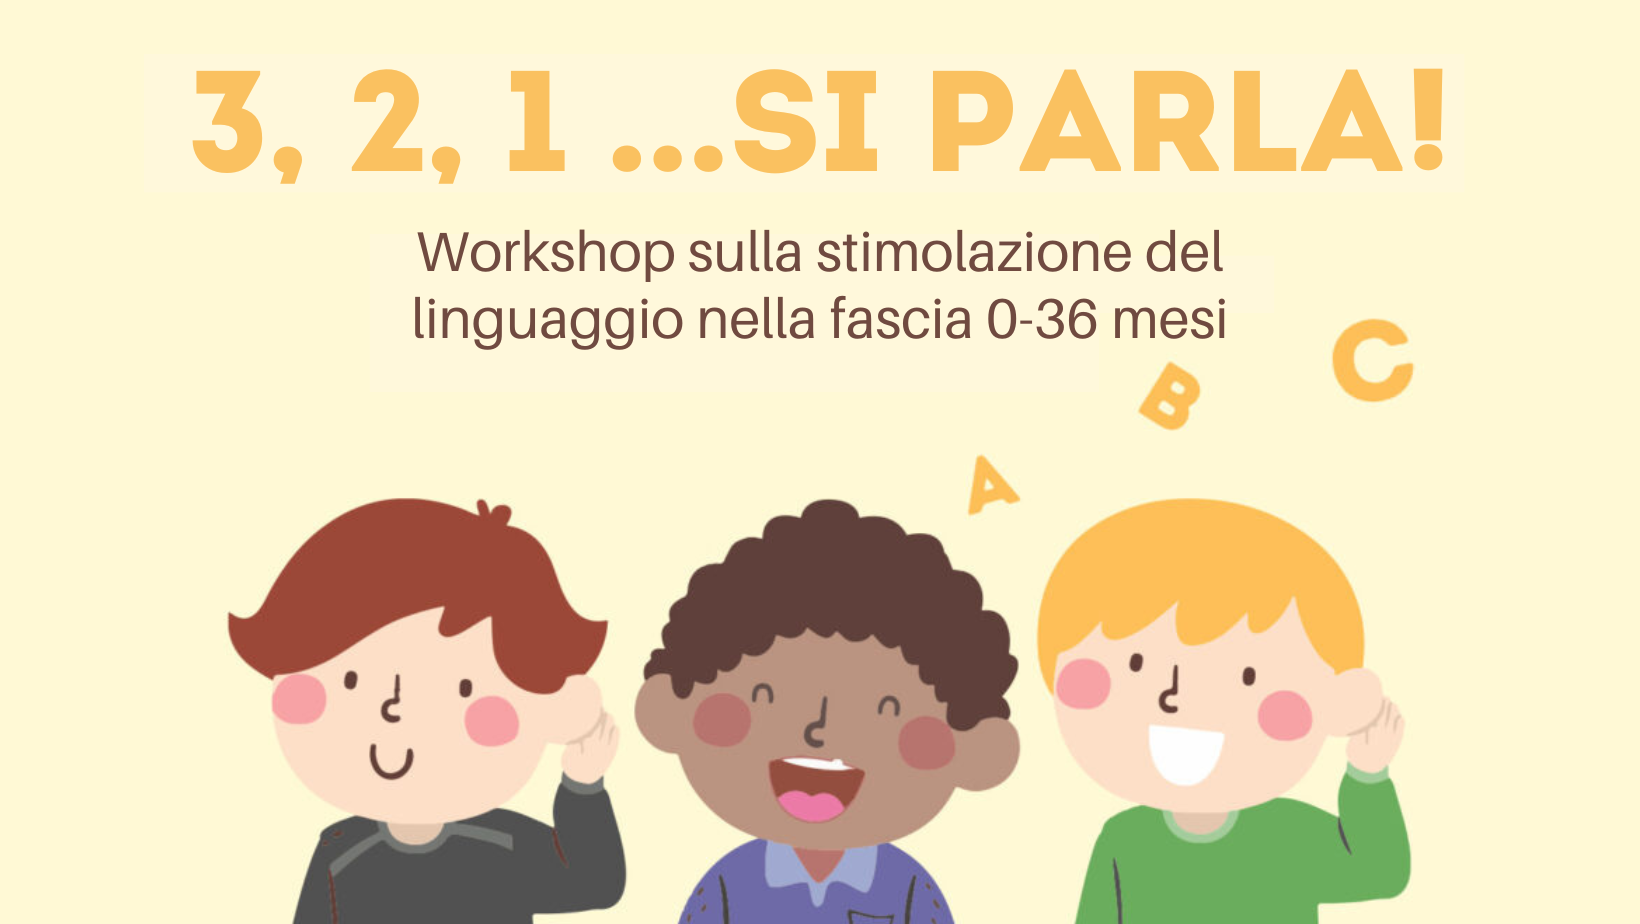 3, 2, 1…Si parla! Workshop sulla stimolazione del linguaggio